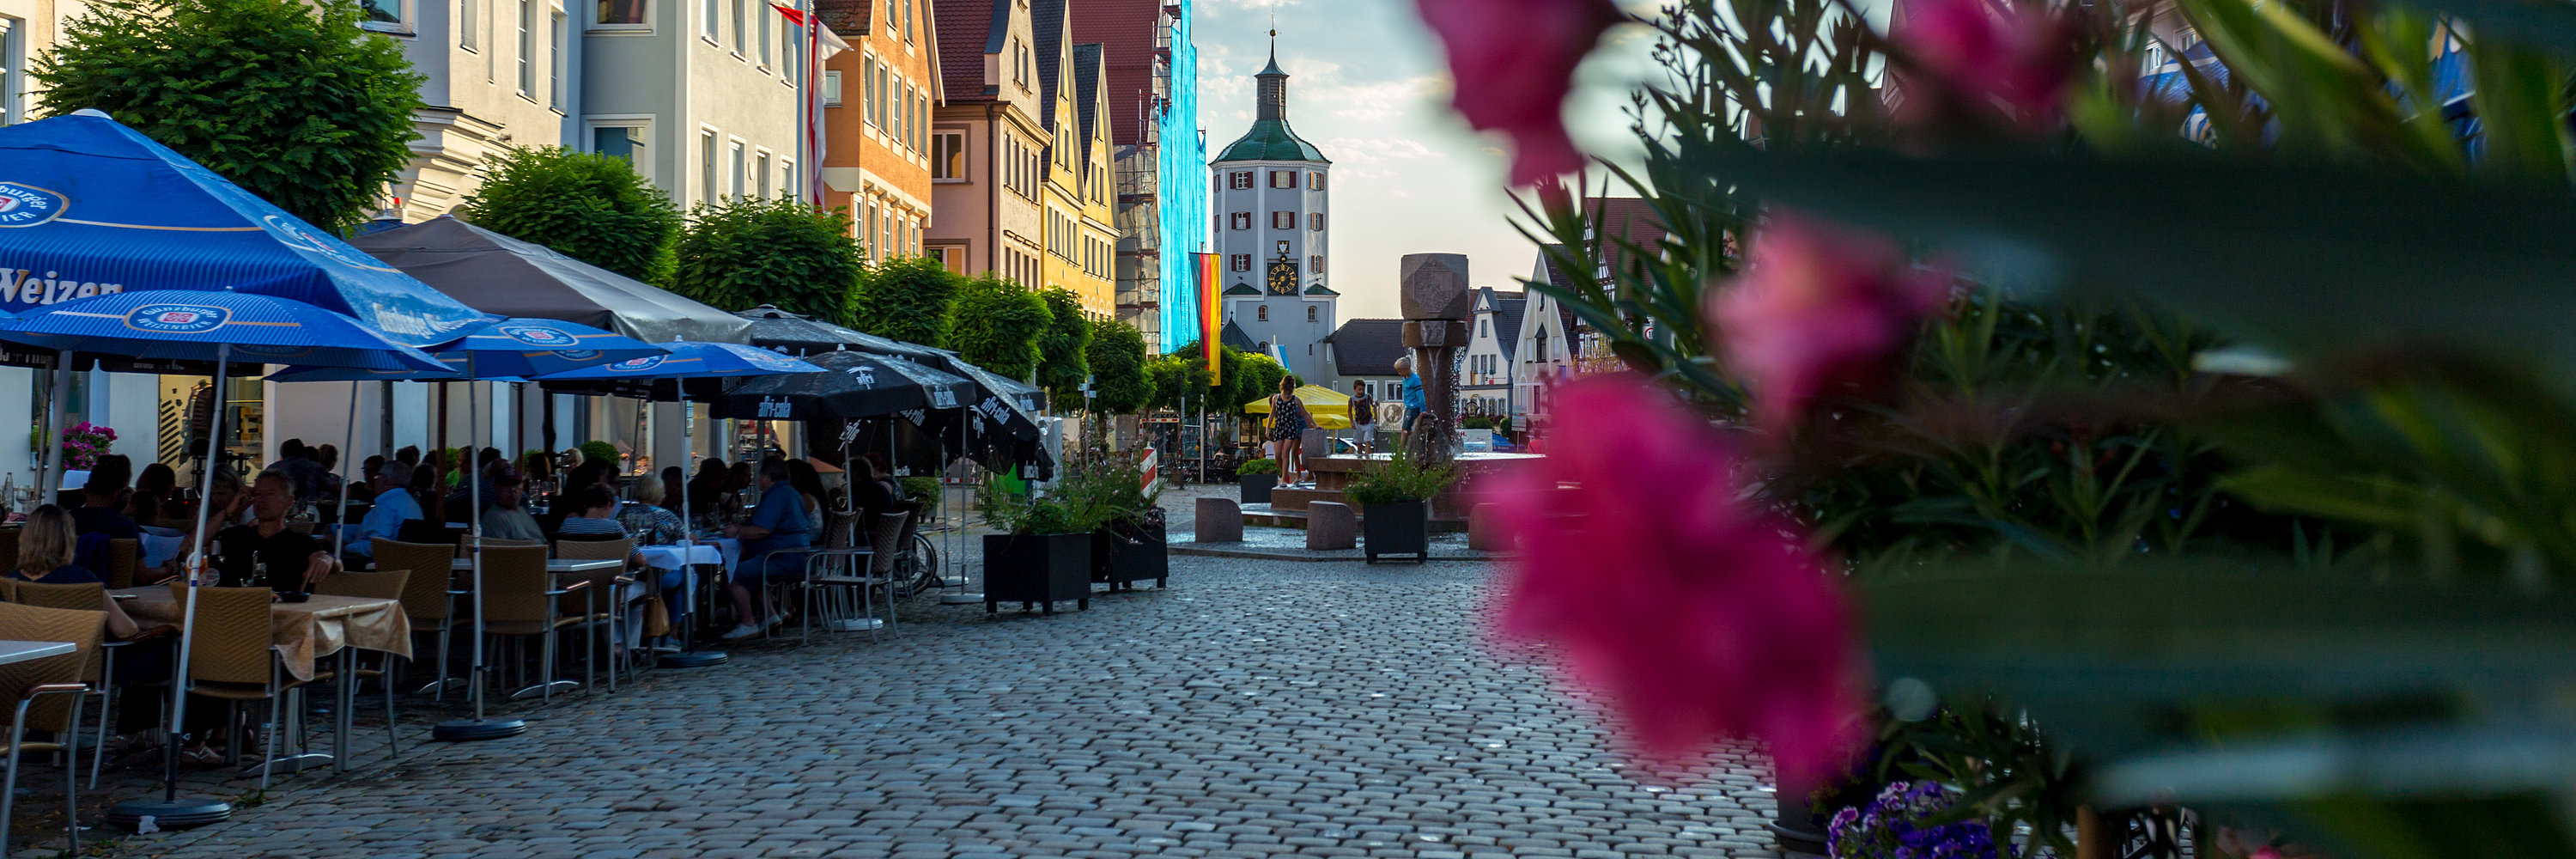 Marktplatz im Sommer. Foto: Philipp Röger für die Stadt Günzburg